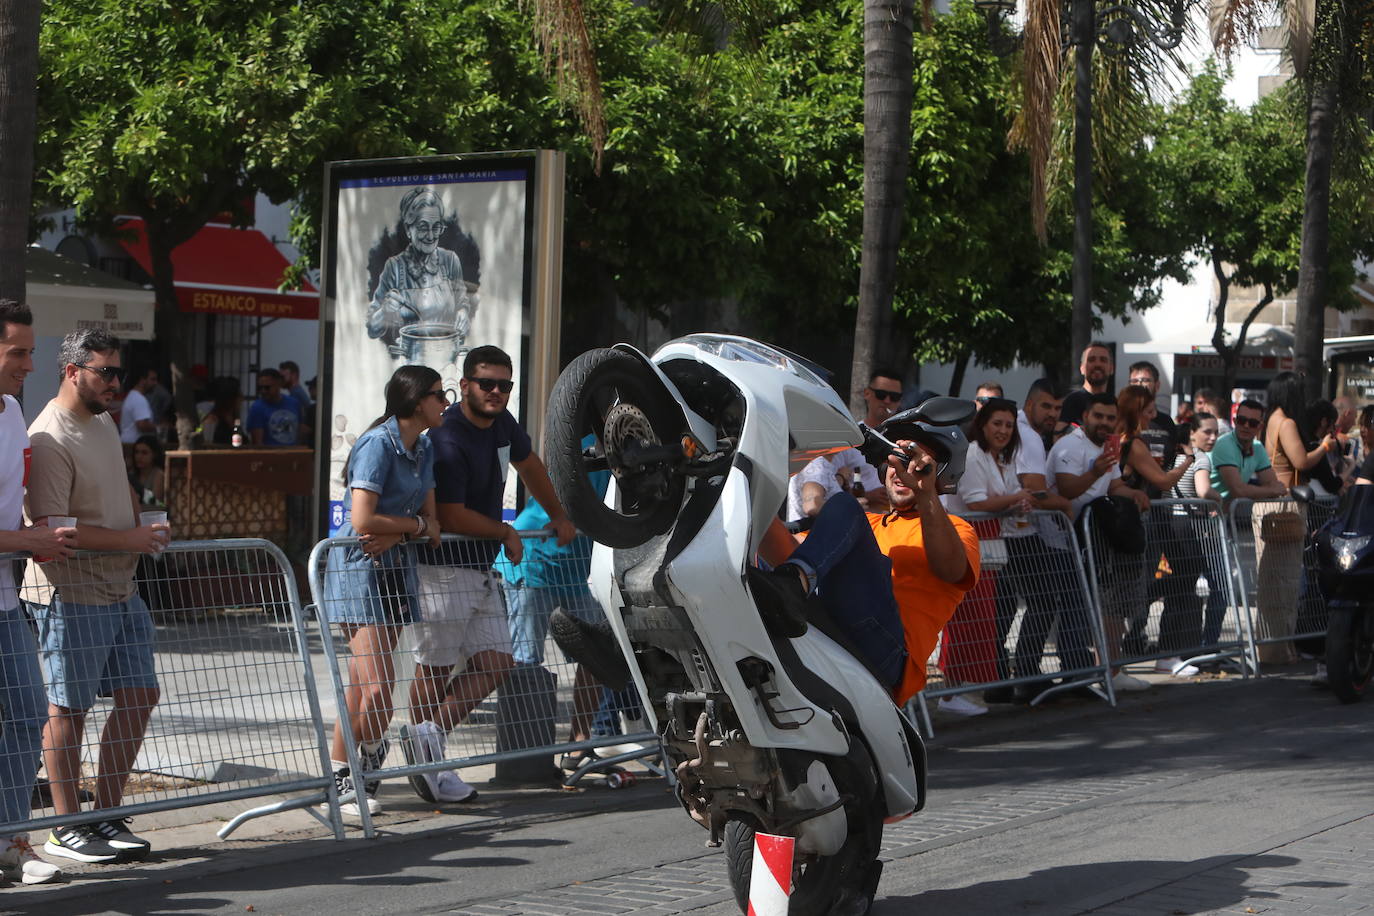 Fotos: Sábado de motos con gran ambiente en El Puerto